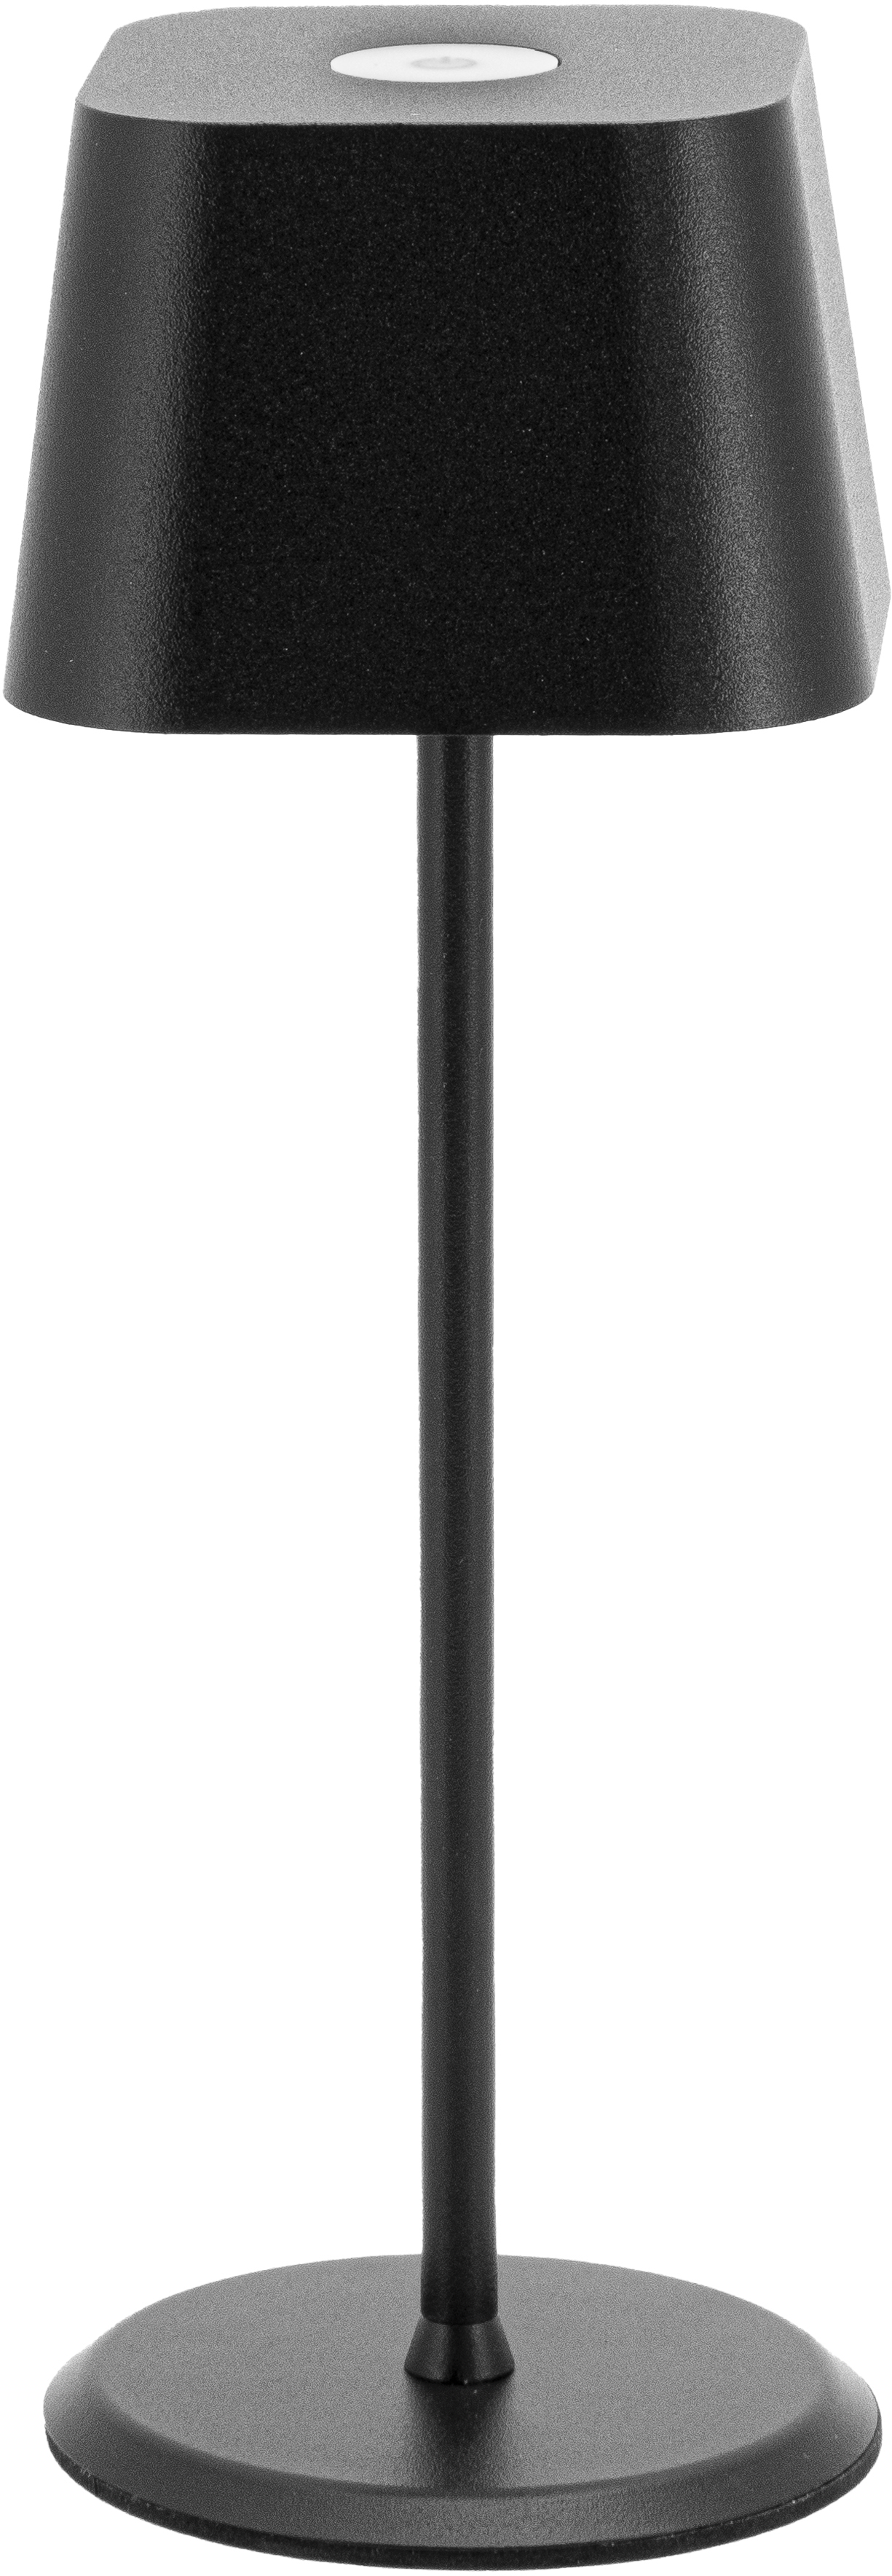 SECURIT Lampe de table MALTA LP-MT-BL noir, batterie, dimmable